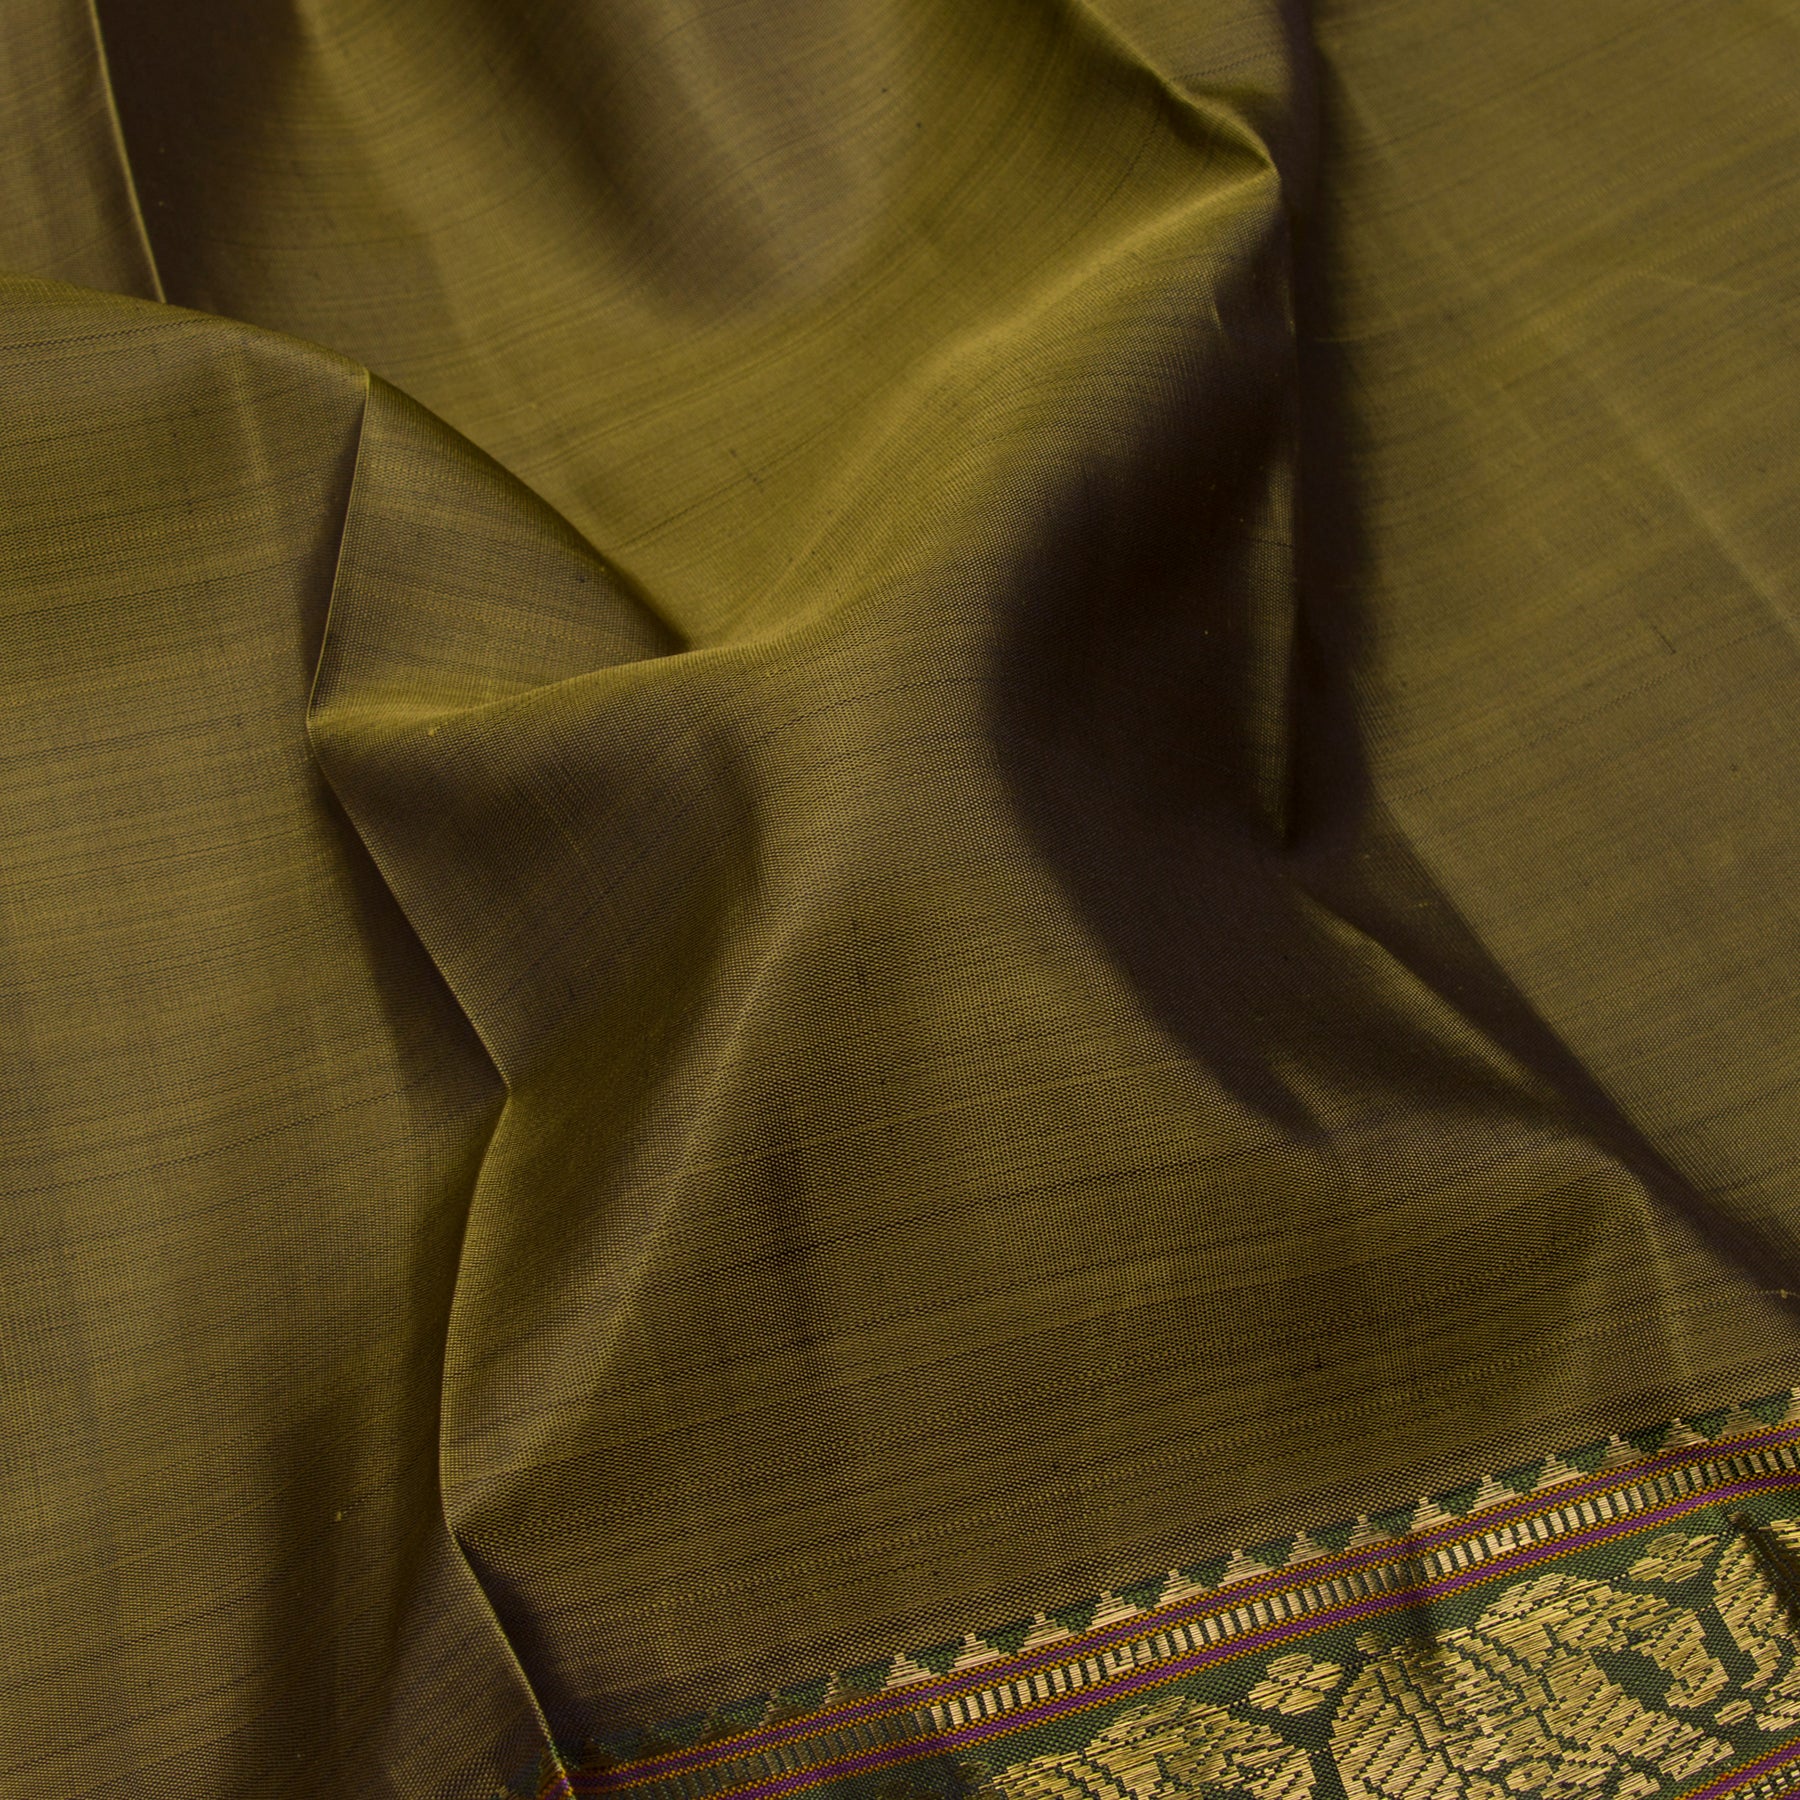 Kanakavalli Kanjivaram Silk Sari 23-611-HS001-12939 - Fabric View